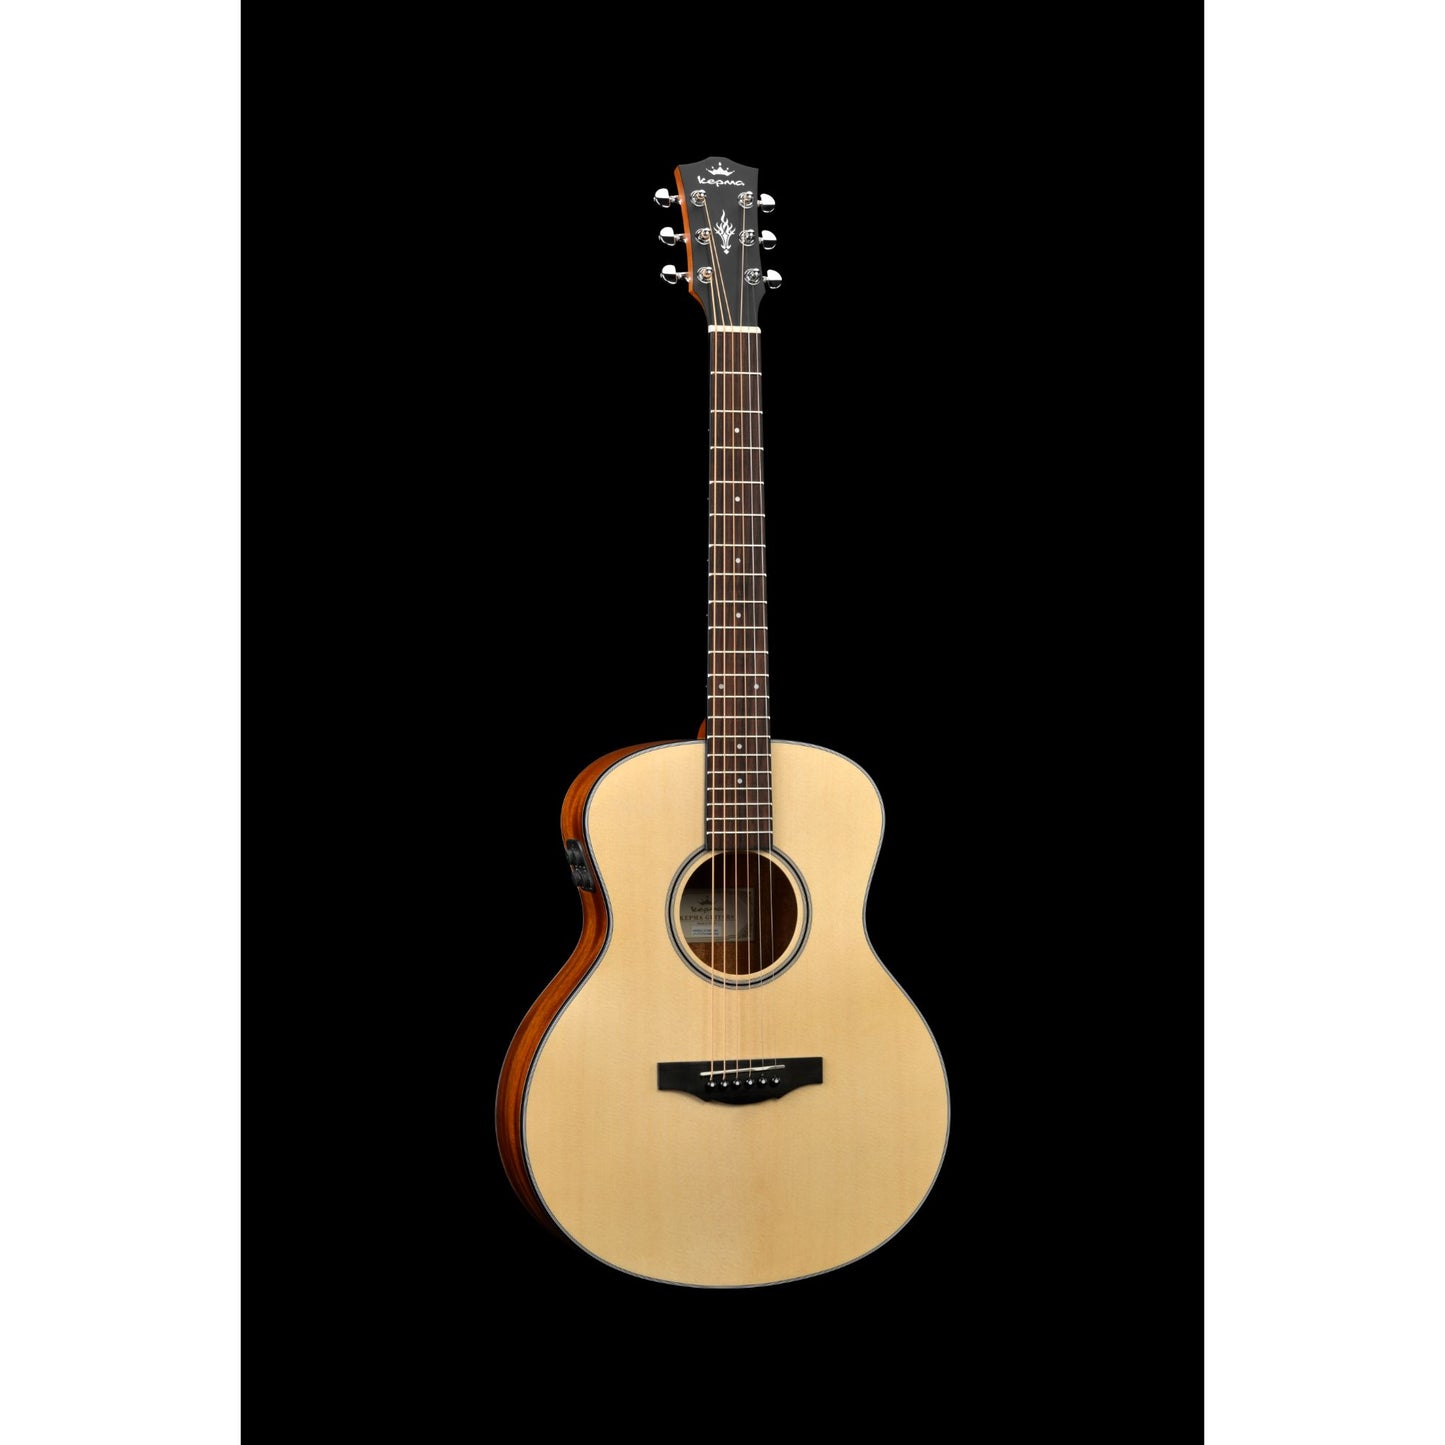 Kepma ES36-E TRANS K10 Semi - Acoustic Guitar - Natural Matt